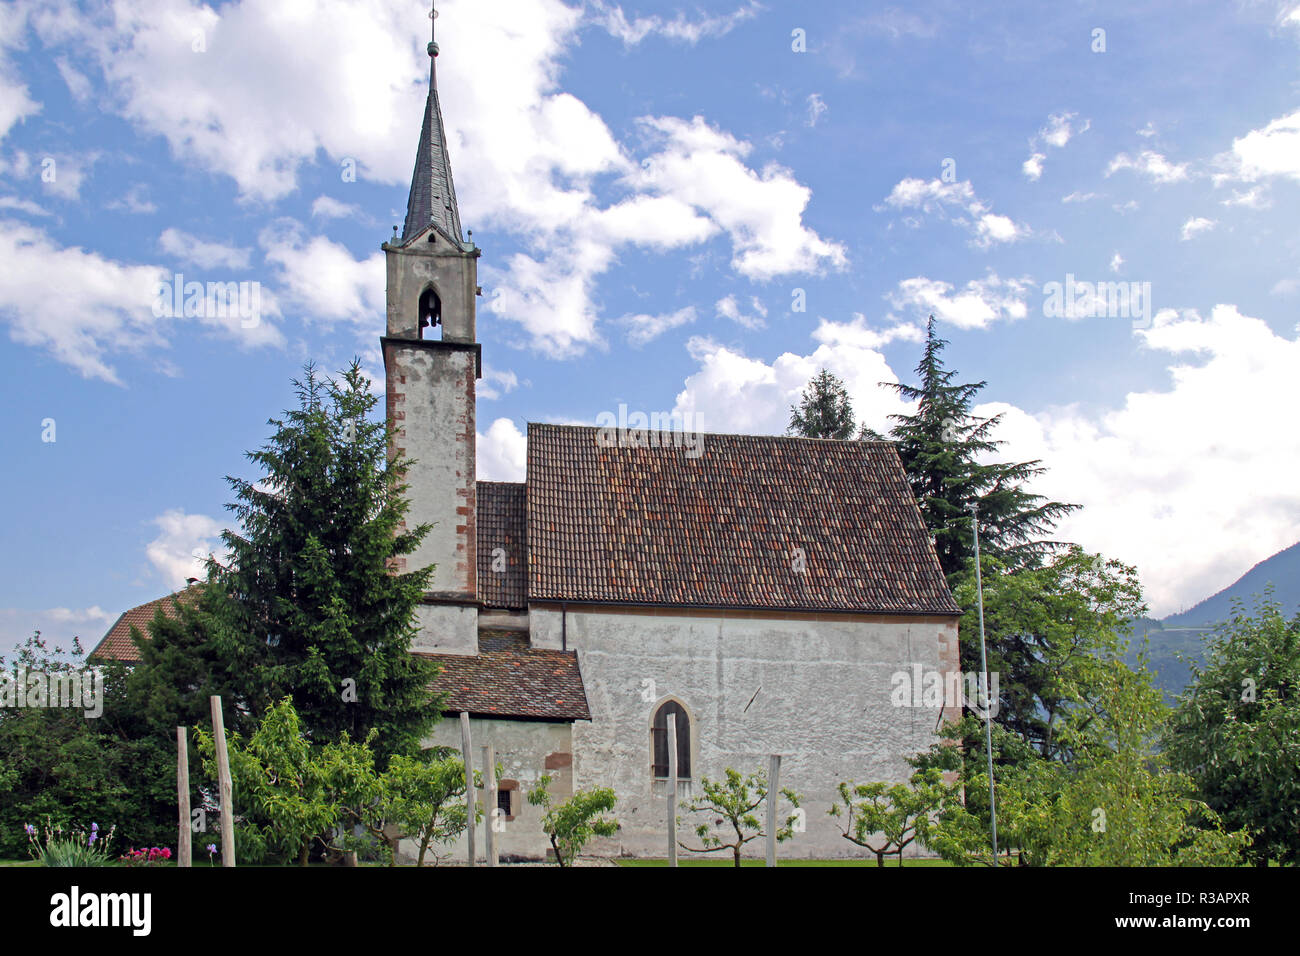 Chiesa Sant Agata nel prato a lana in alto adige Foto Stock